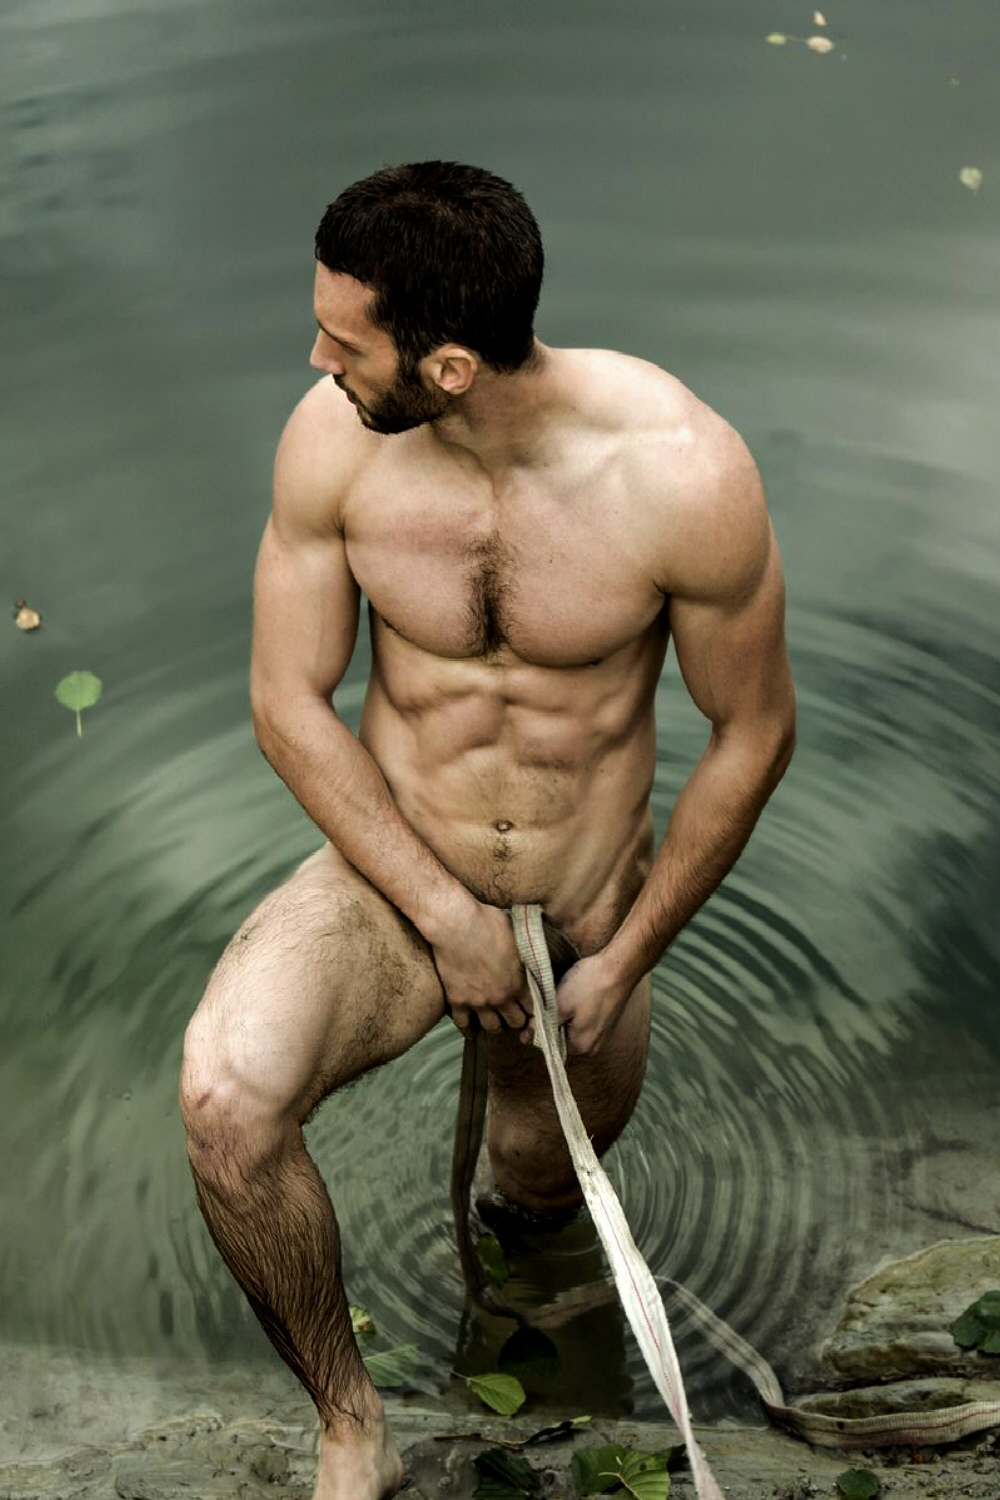 Très jolie photo d’un homme nu intégral qui sort de l’eau